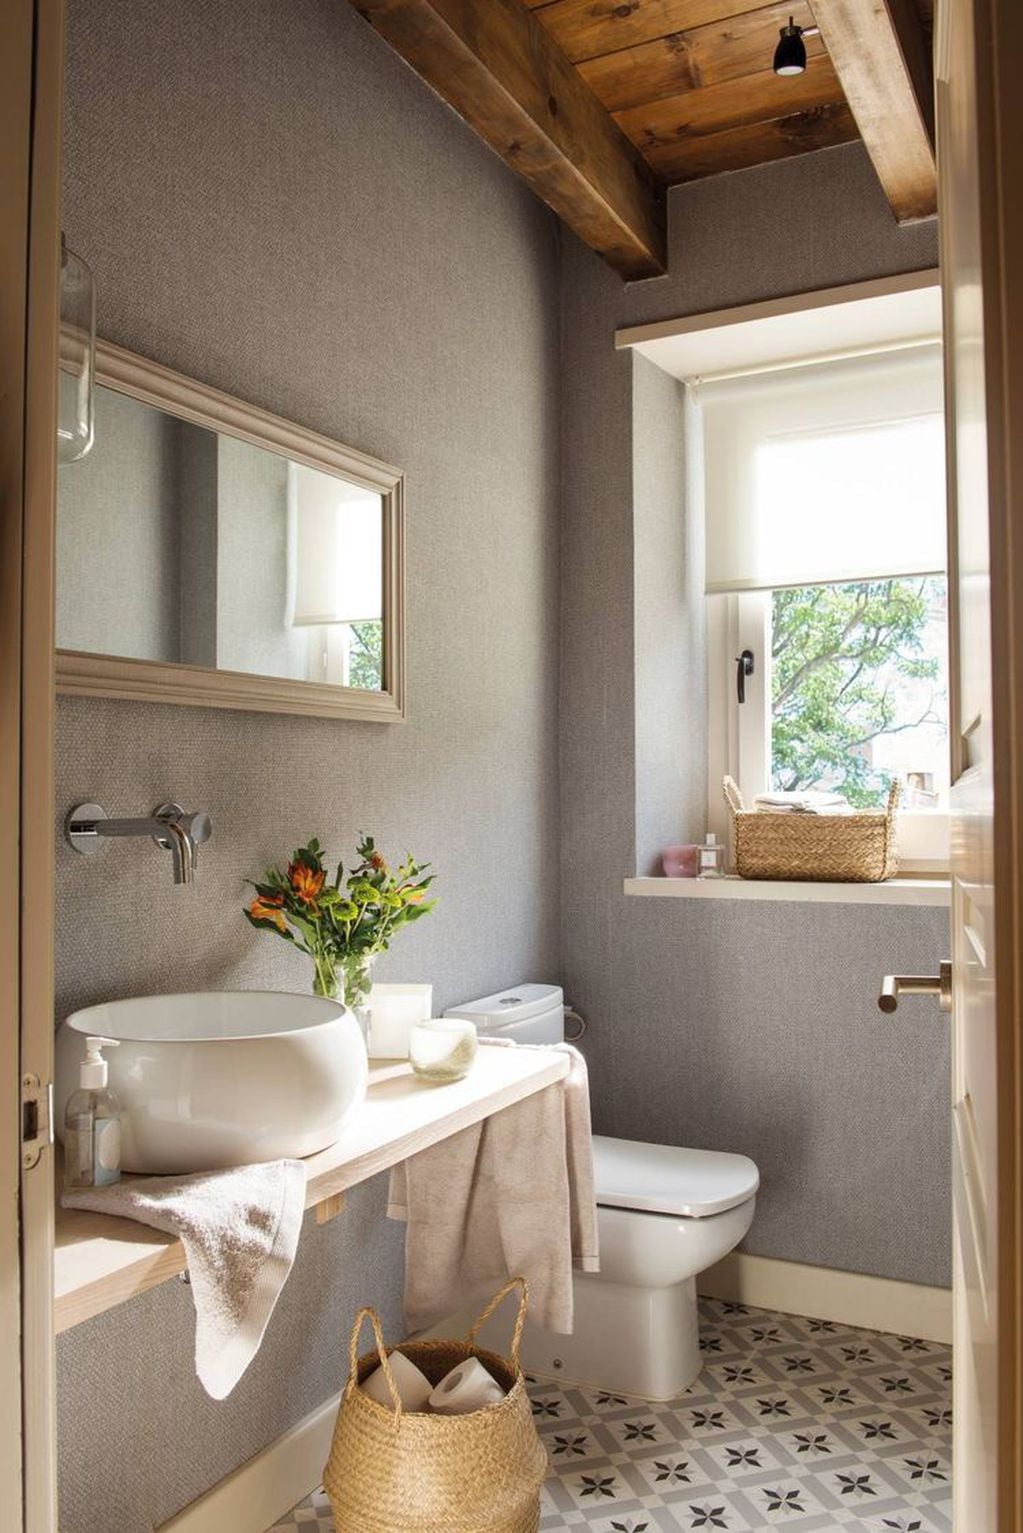 Elementos decorativos para transformar tu baño por completo en un espacio de relajación y paz.